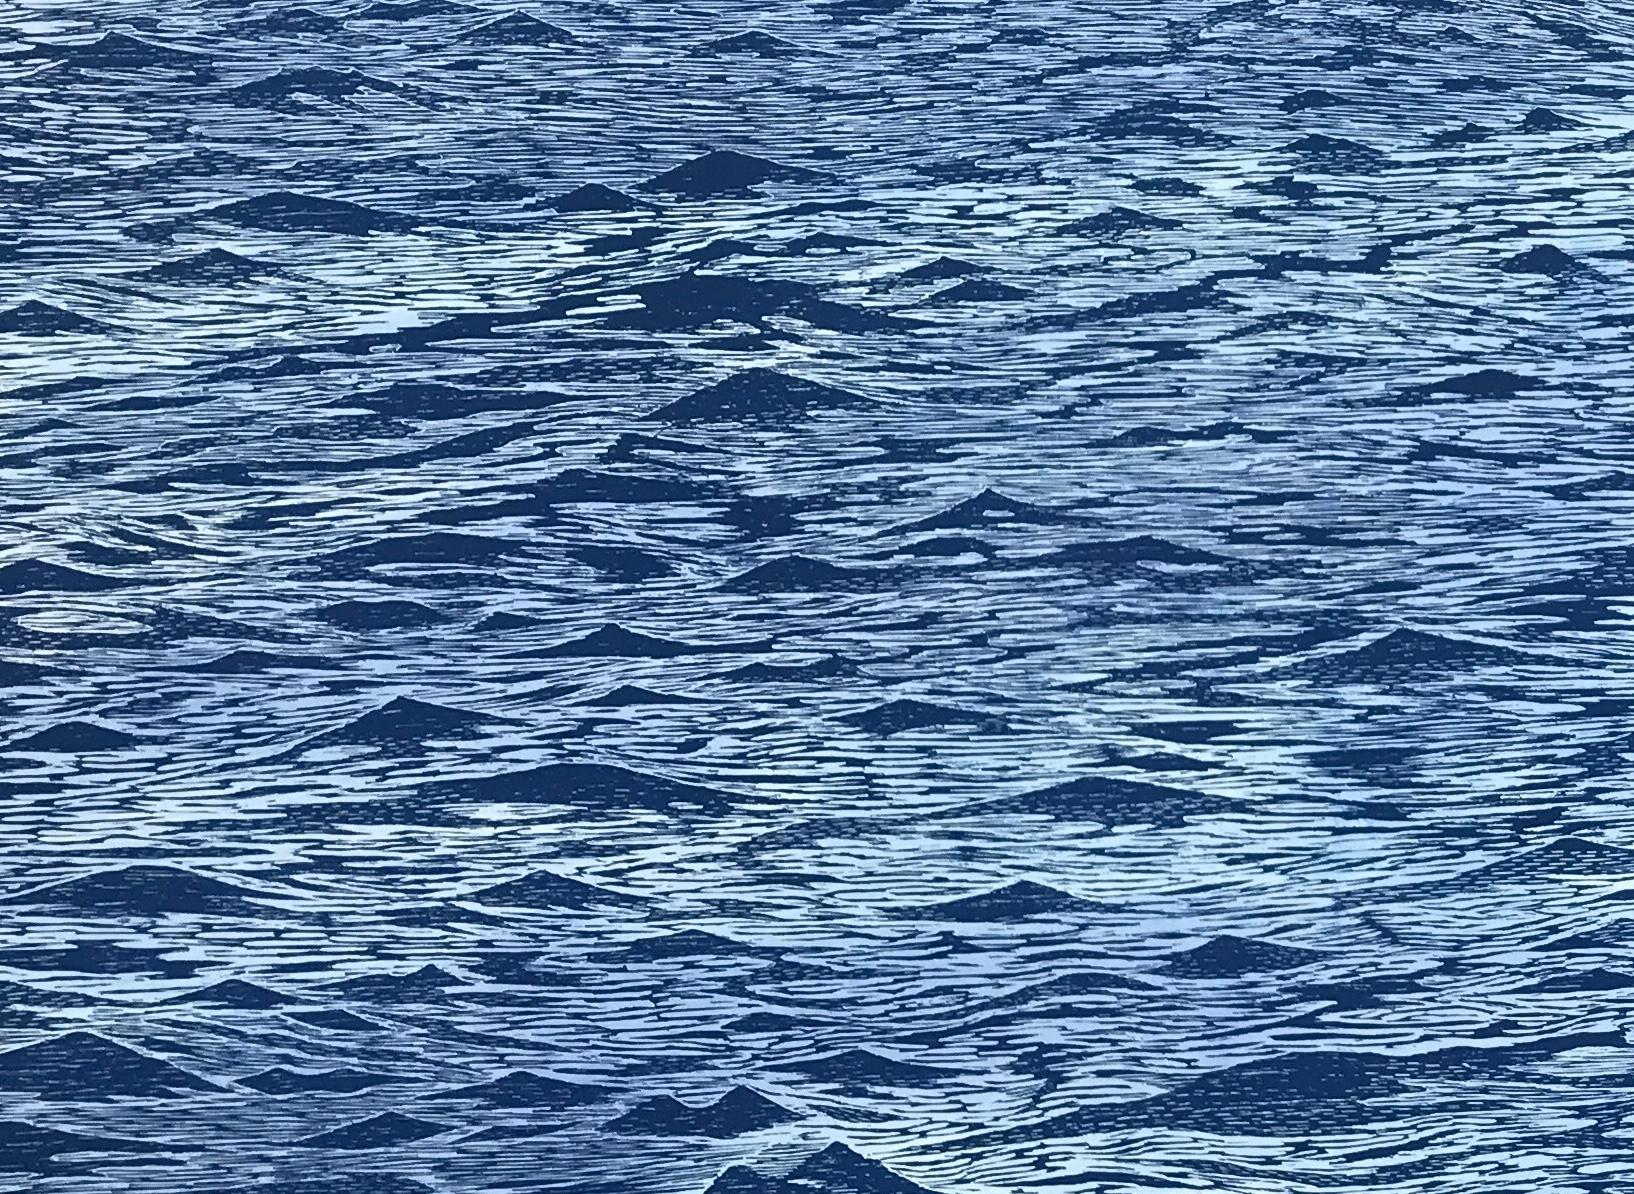 Diptyque de paysage marin 23, grande gravure horizontale sur bois bleue représentant de l'eau et des vagues océaniques - Bleu Landscape Print par Eve Stockton